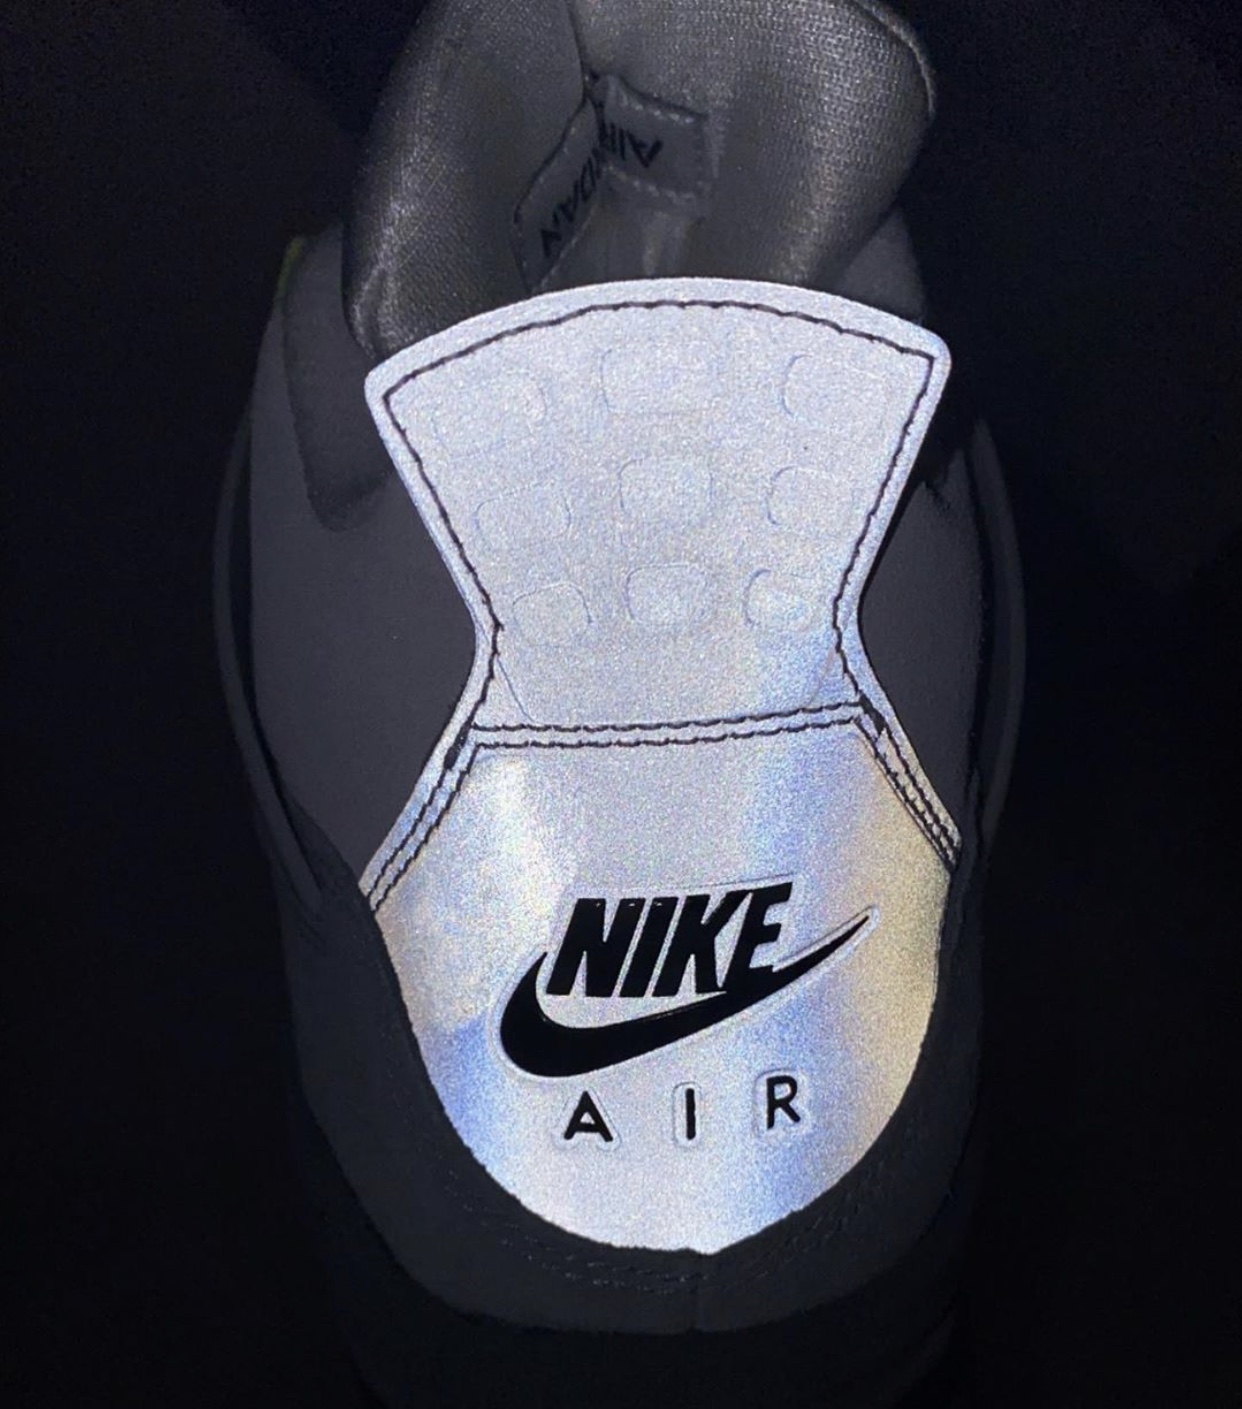 Air Jordan 4 Neon Air Max 95 CT5342-007 Release Date - SBD